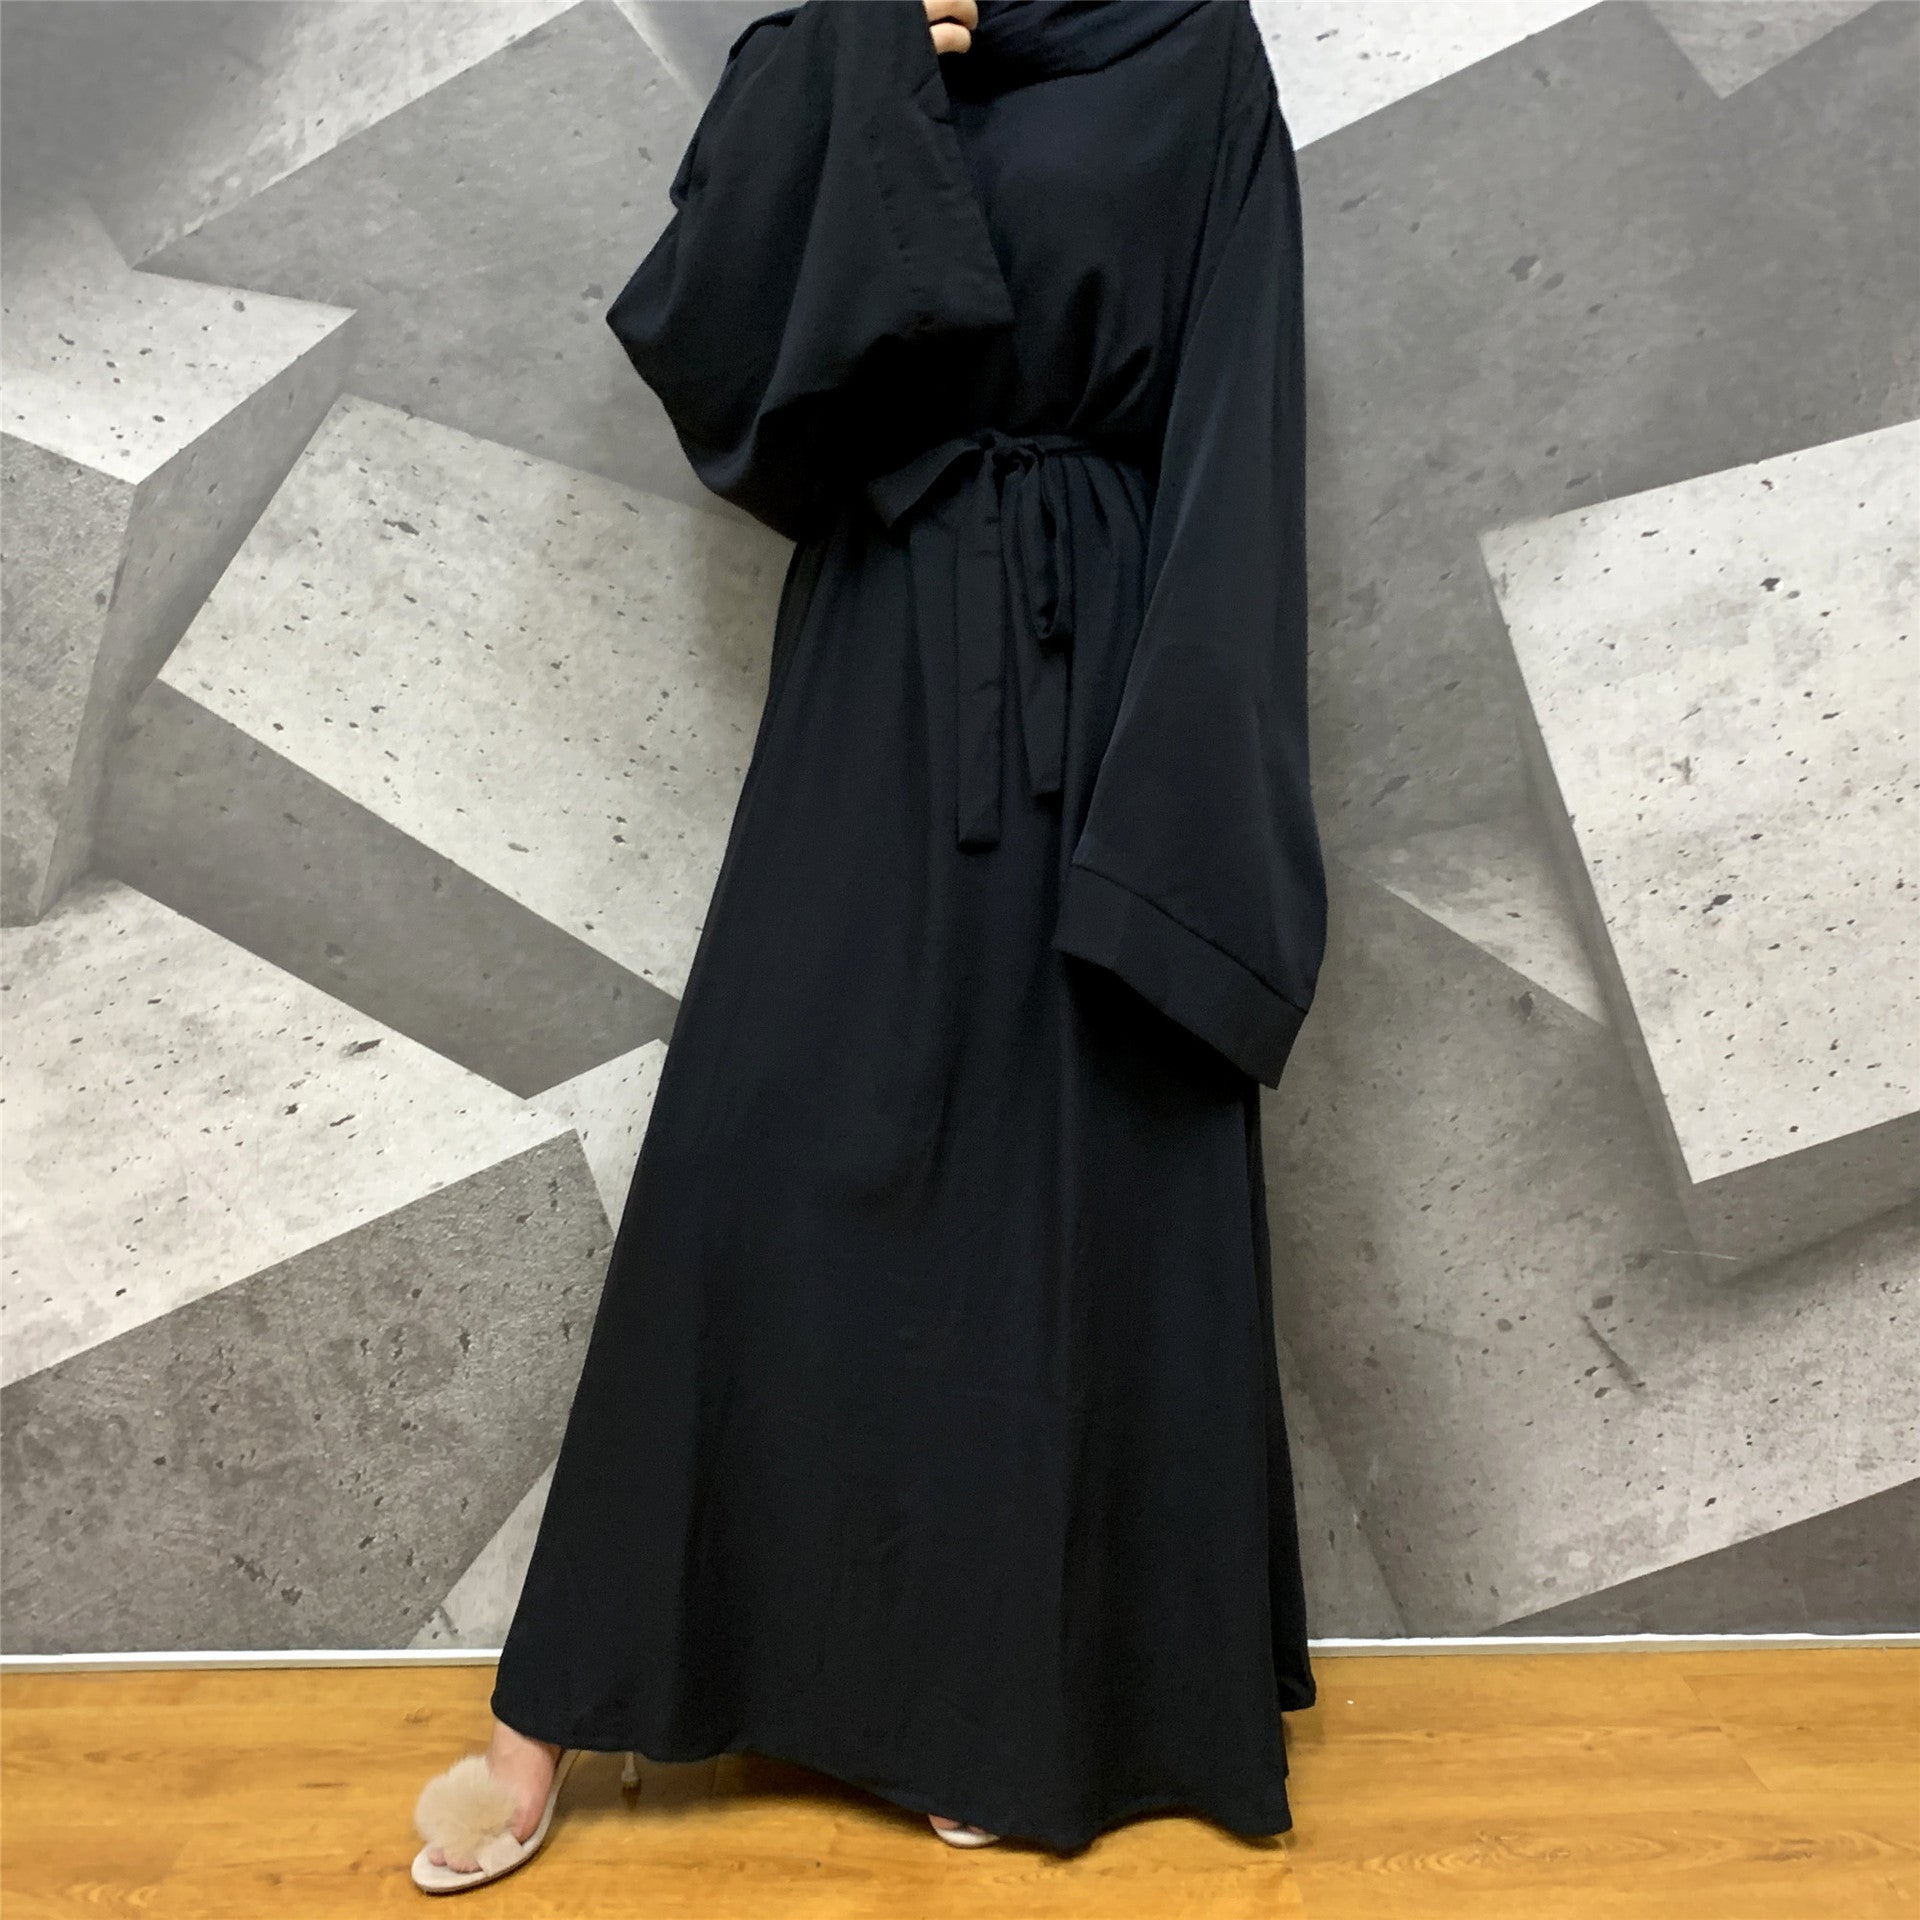 Solid Color Plus Size Lace-up Muslim Dress